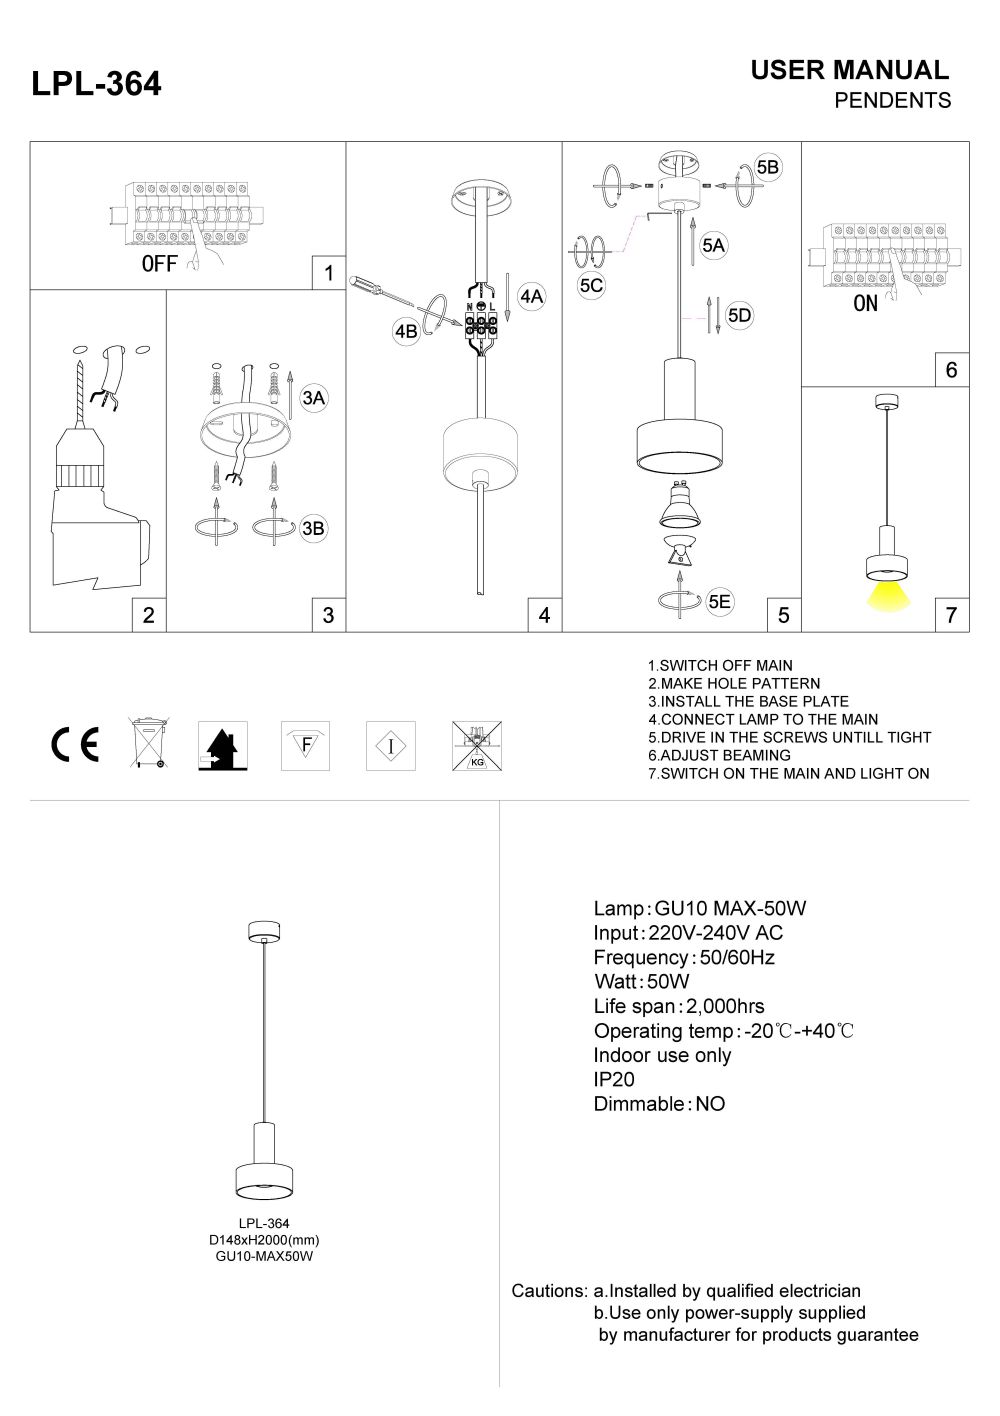 LPL-364 LED pendant light installation guide